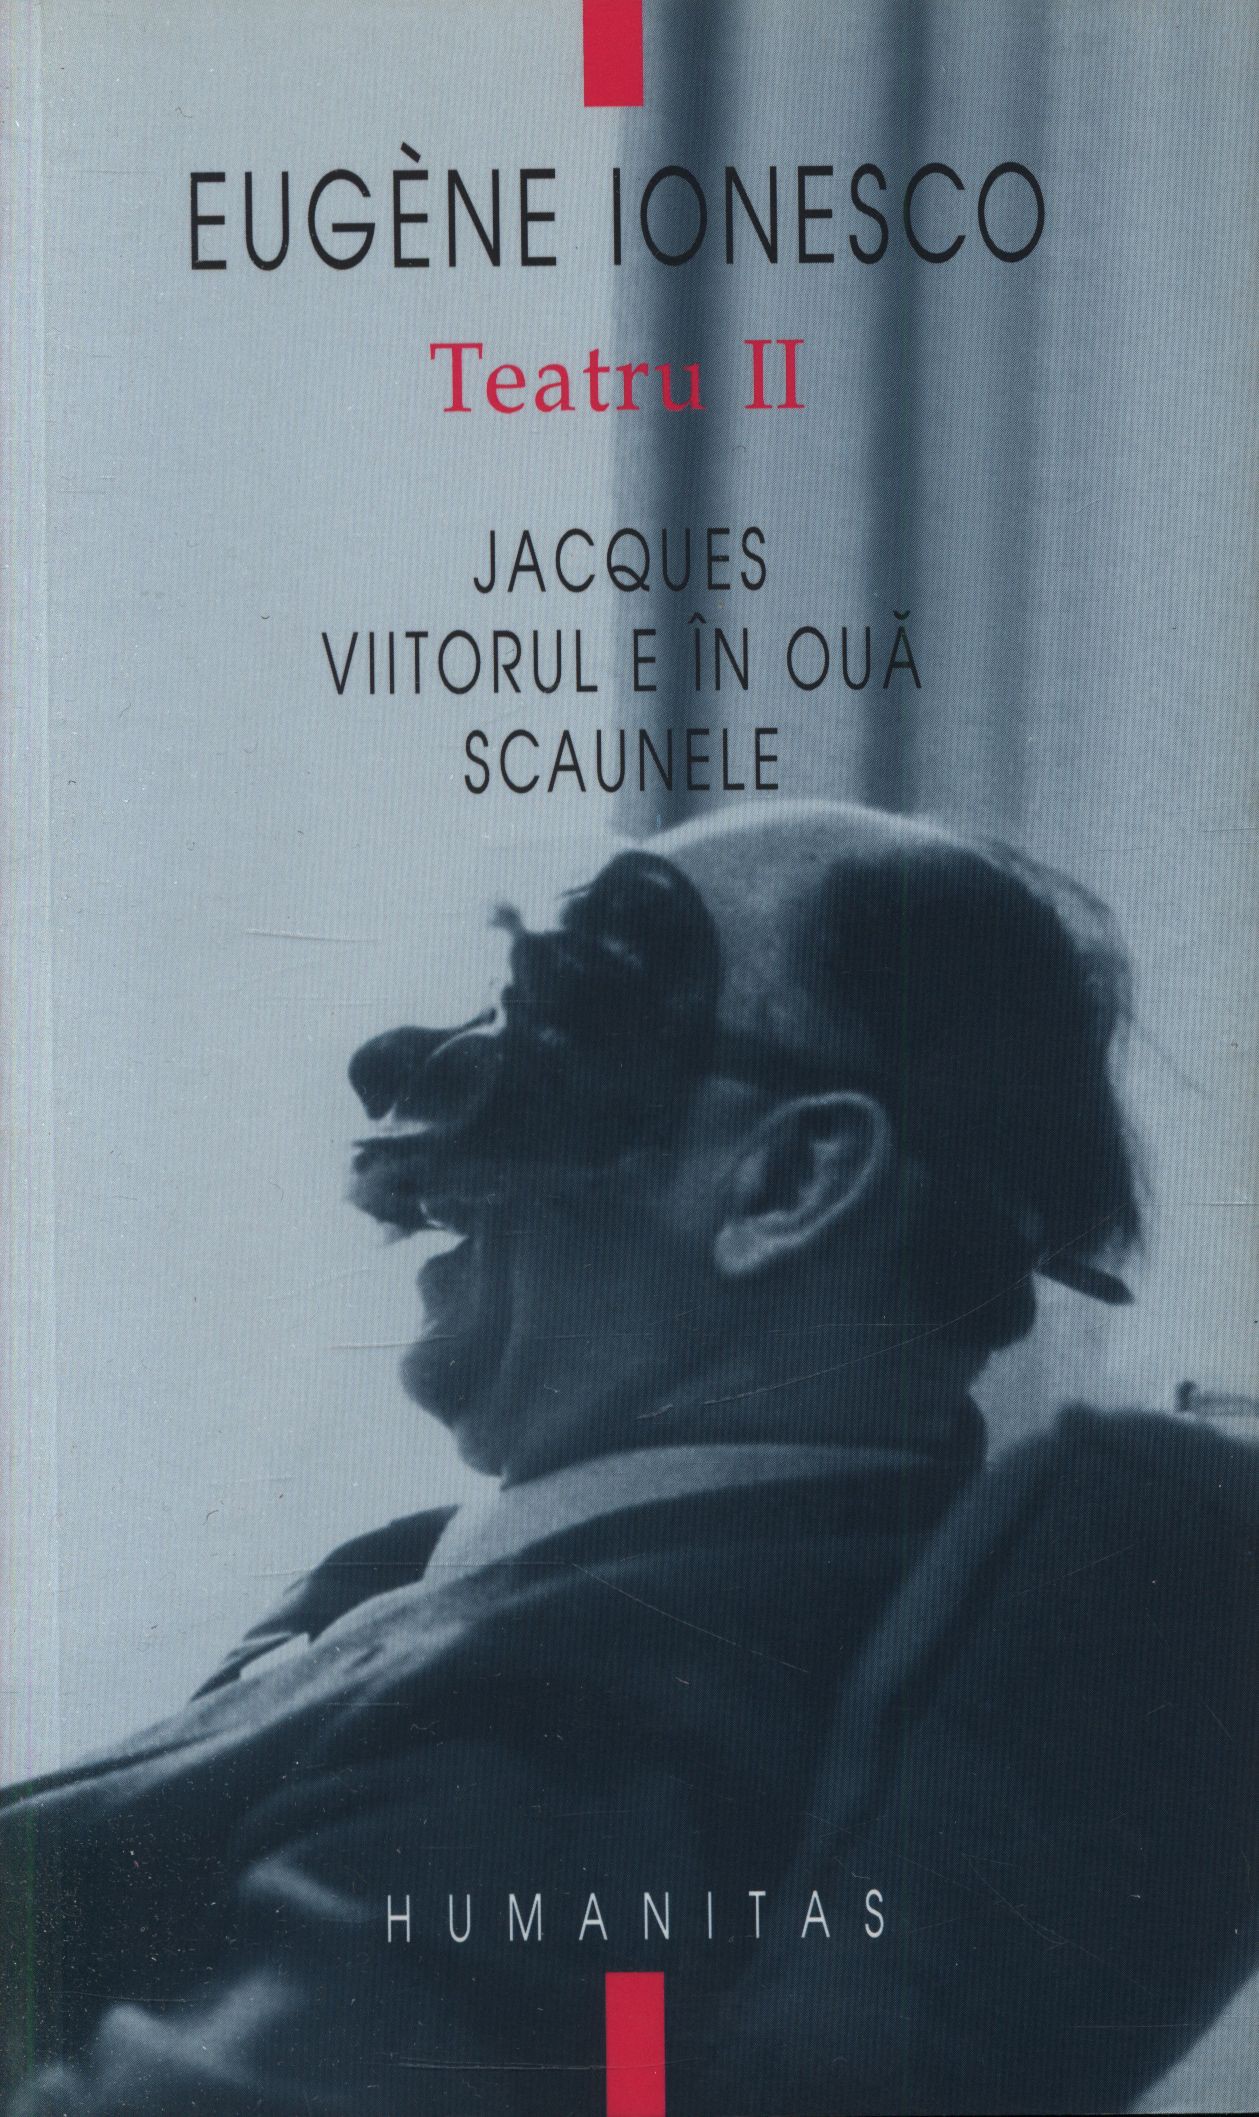 Teatru II - Eugene Ionesco - Jacques, Viitorul e in oua, Scaunele